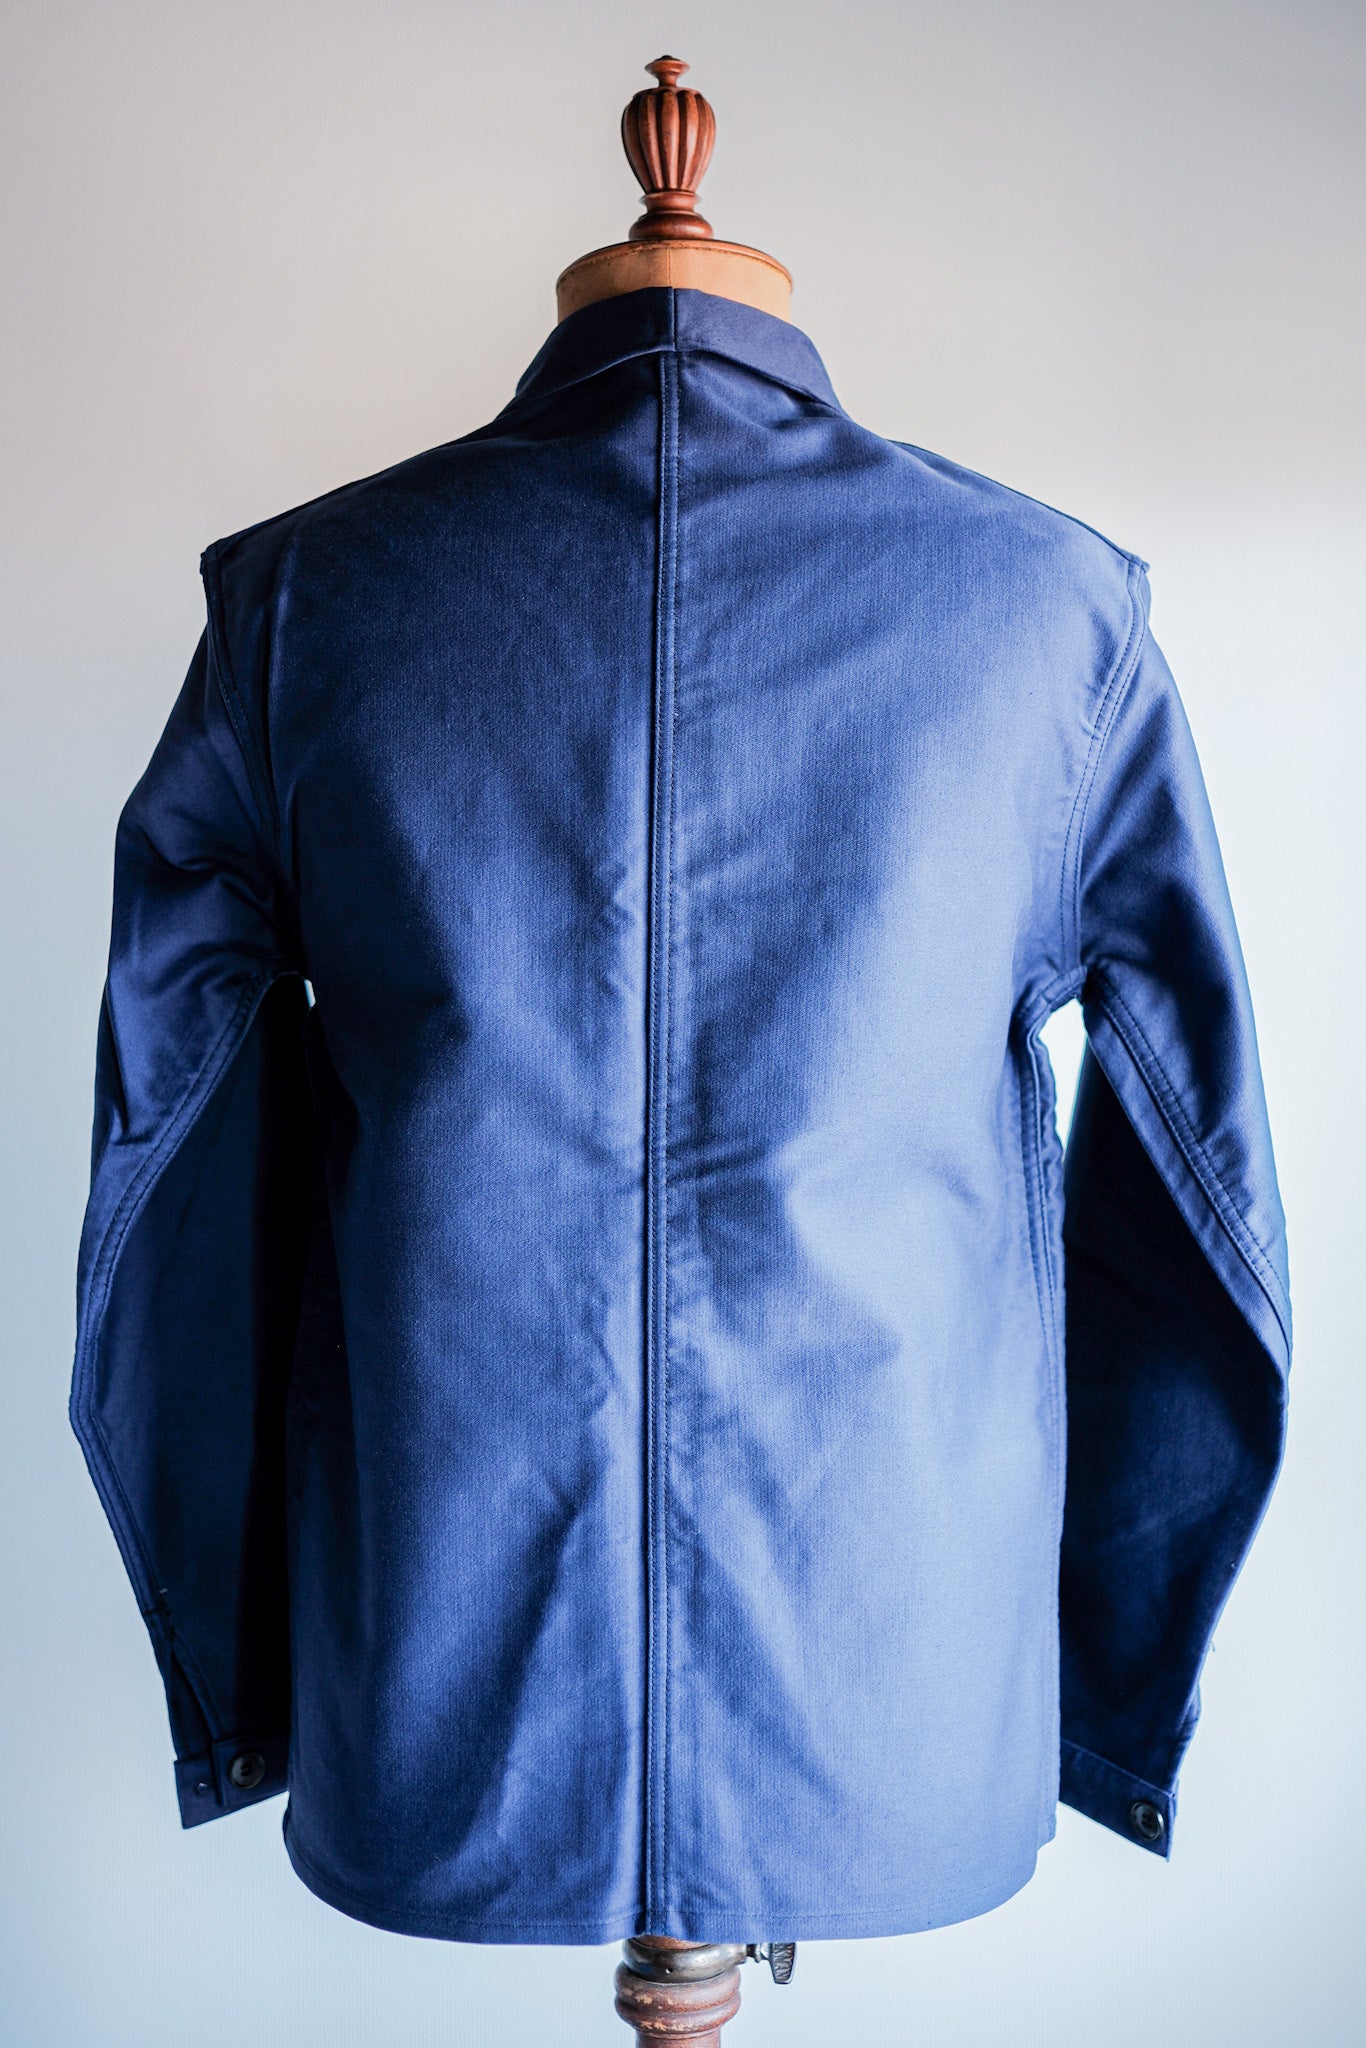 [~ 50's] French vintage bleu moleskin work veste taille.44 "Le Mont st. Michel" "Dead Stock"